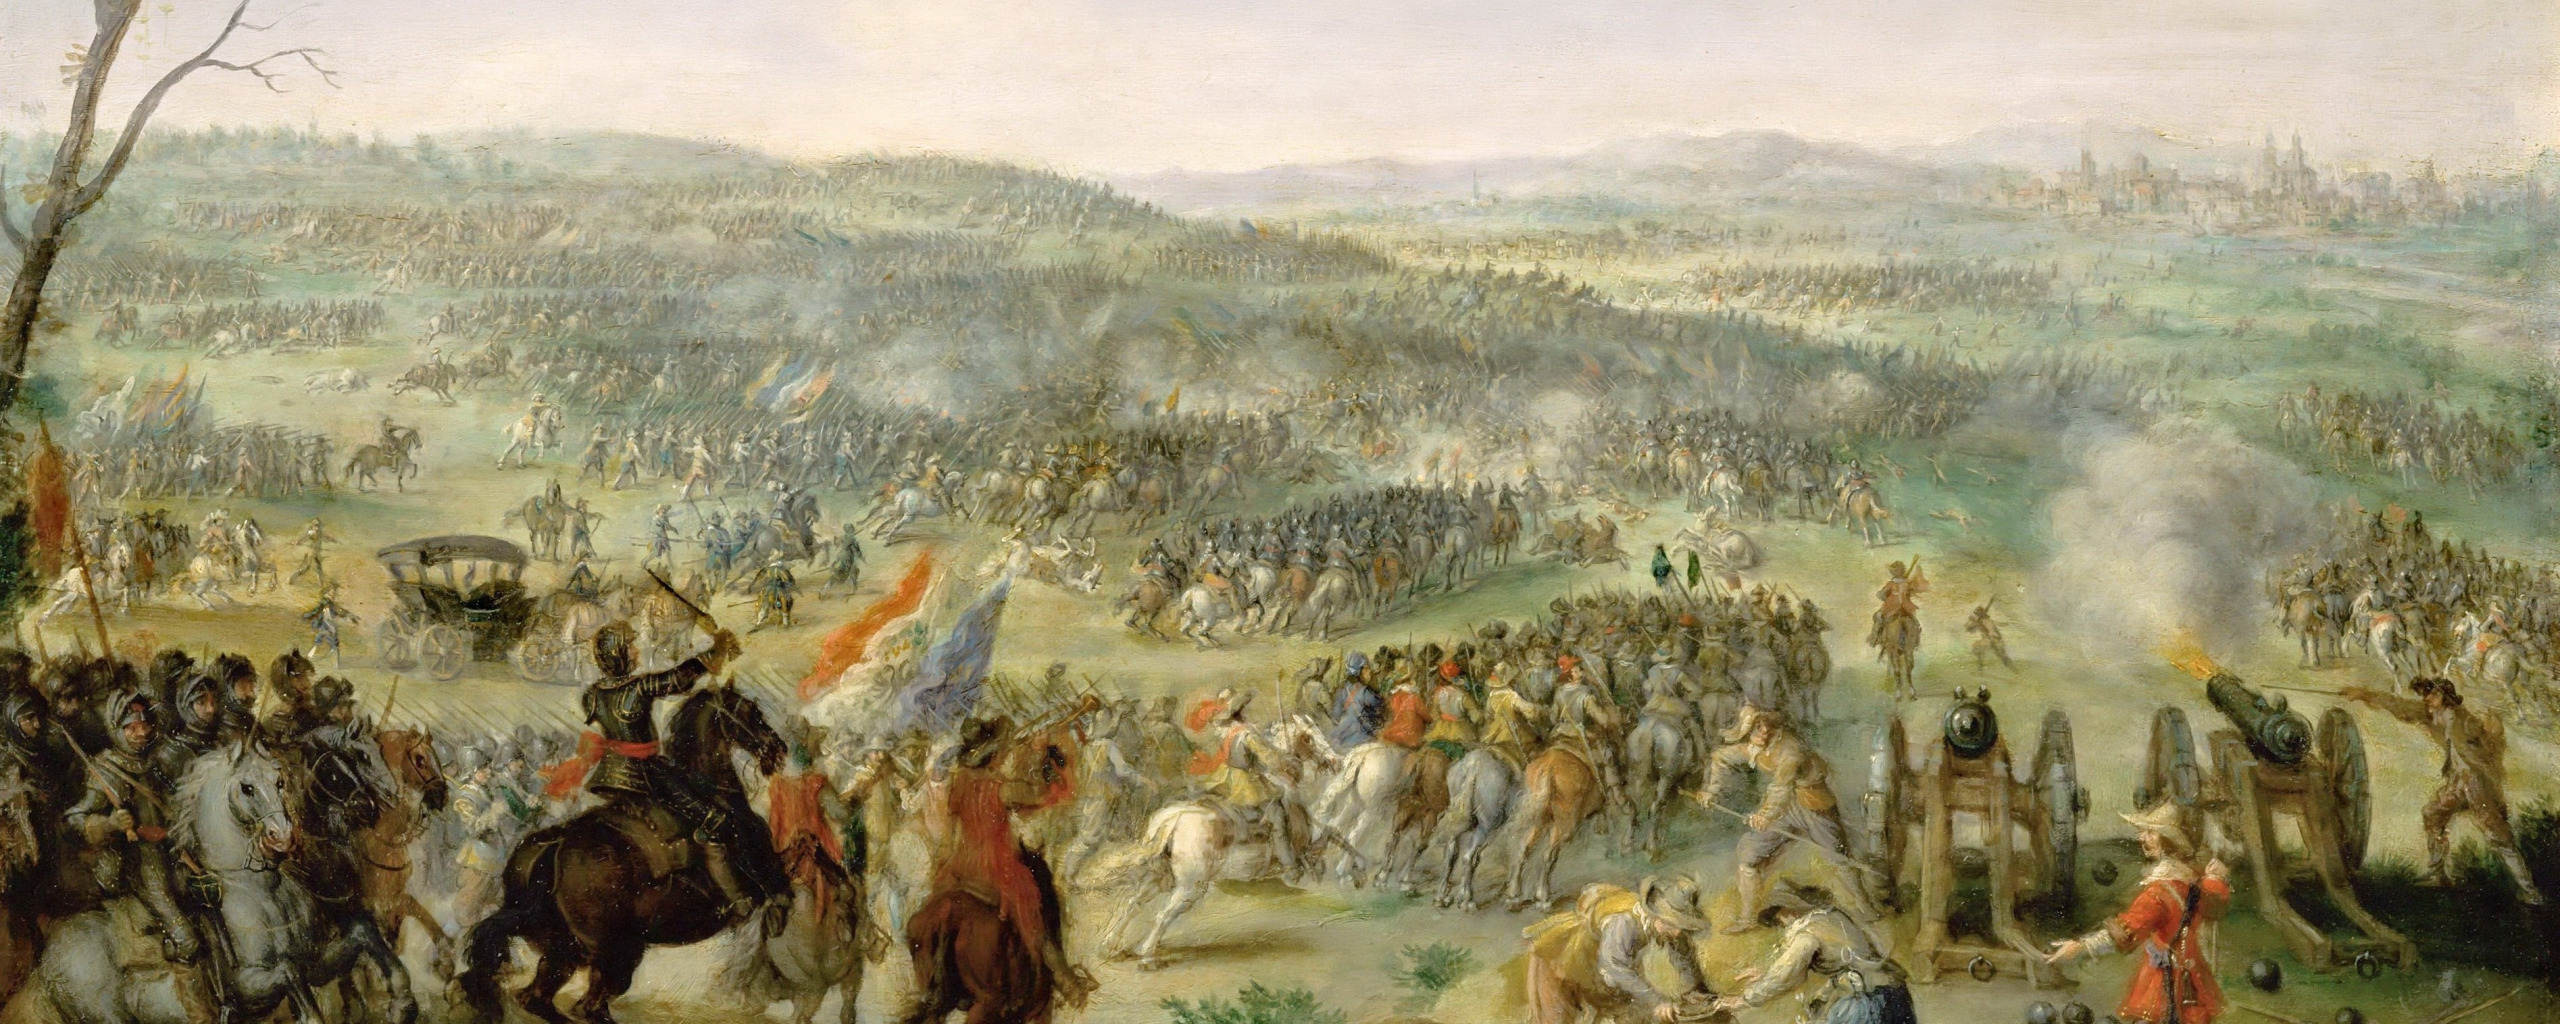 Габсбурги потерпели поражение в тридцатилетней войне. Ангорская битва. Битва Рокруа 1643. Битва при Анкаре 1402.